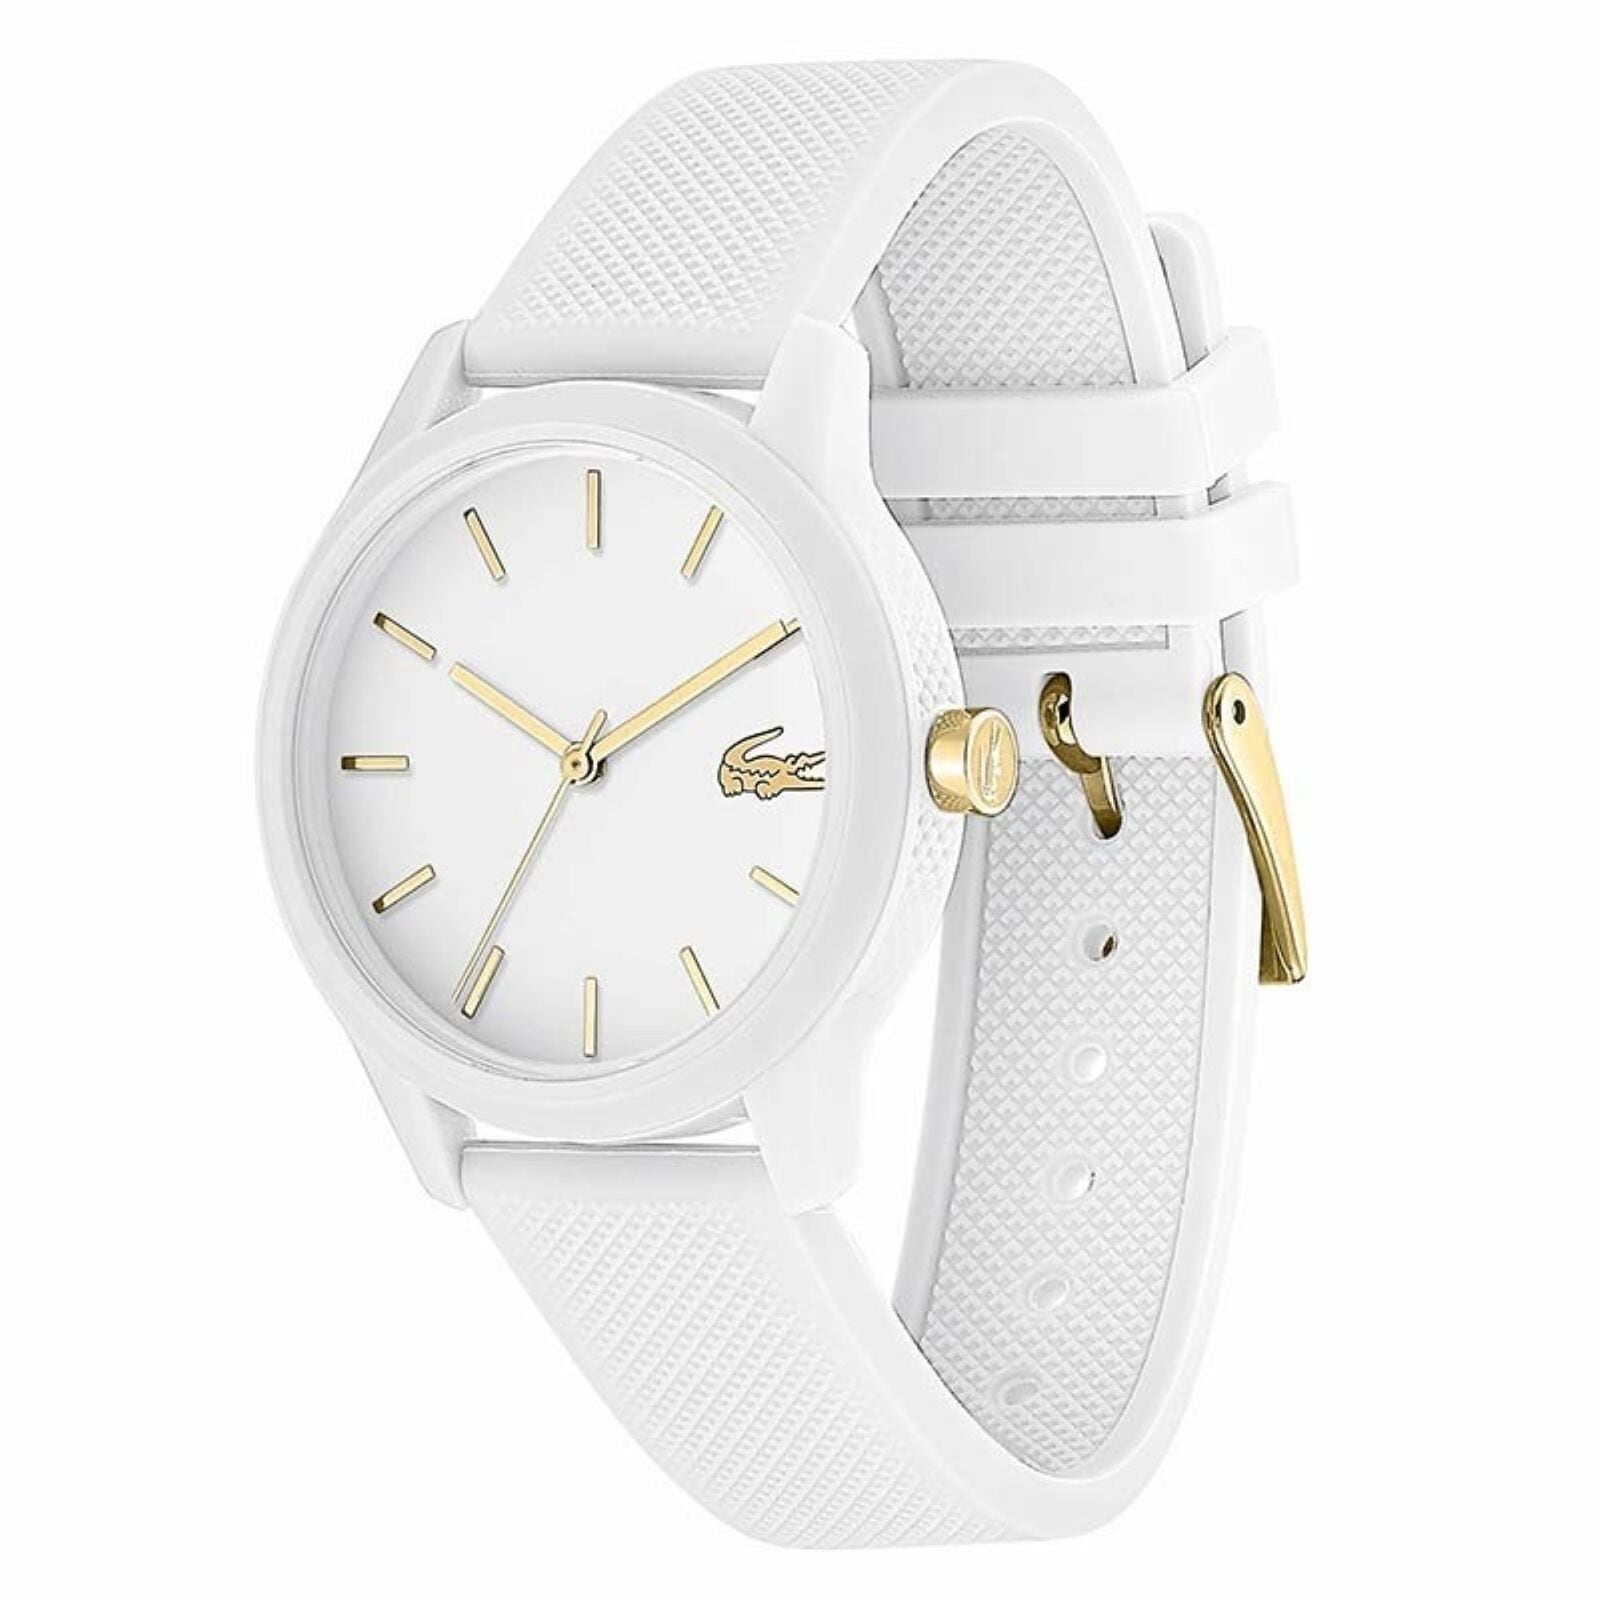 関税・送料込】Lacoste ラコステ 腕時計 ホワイト メンズ レディース